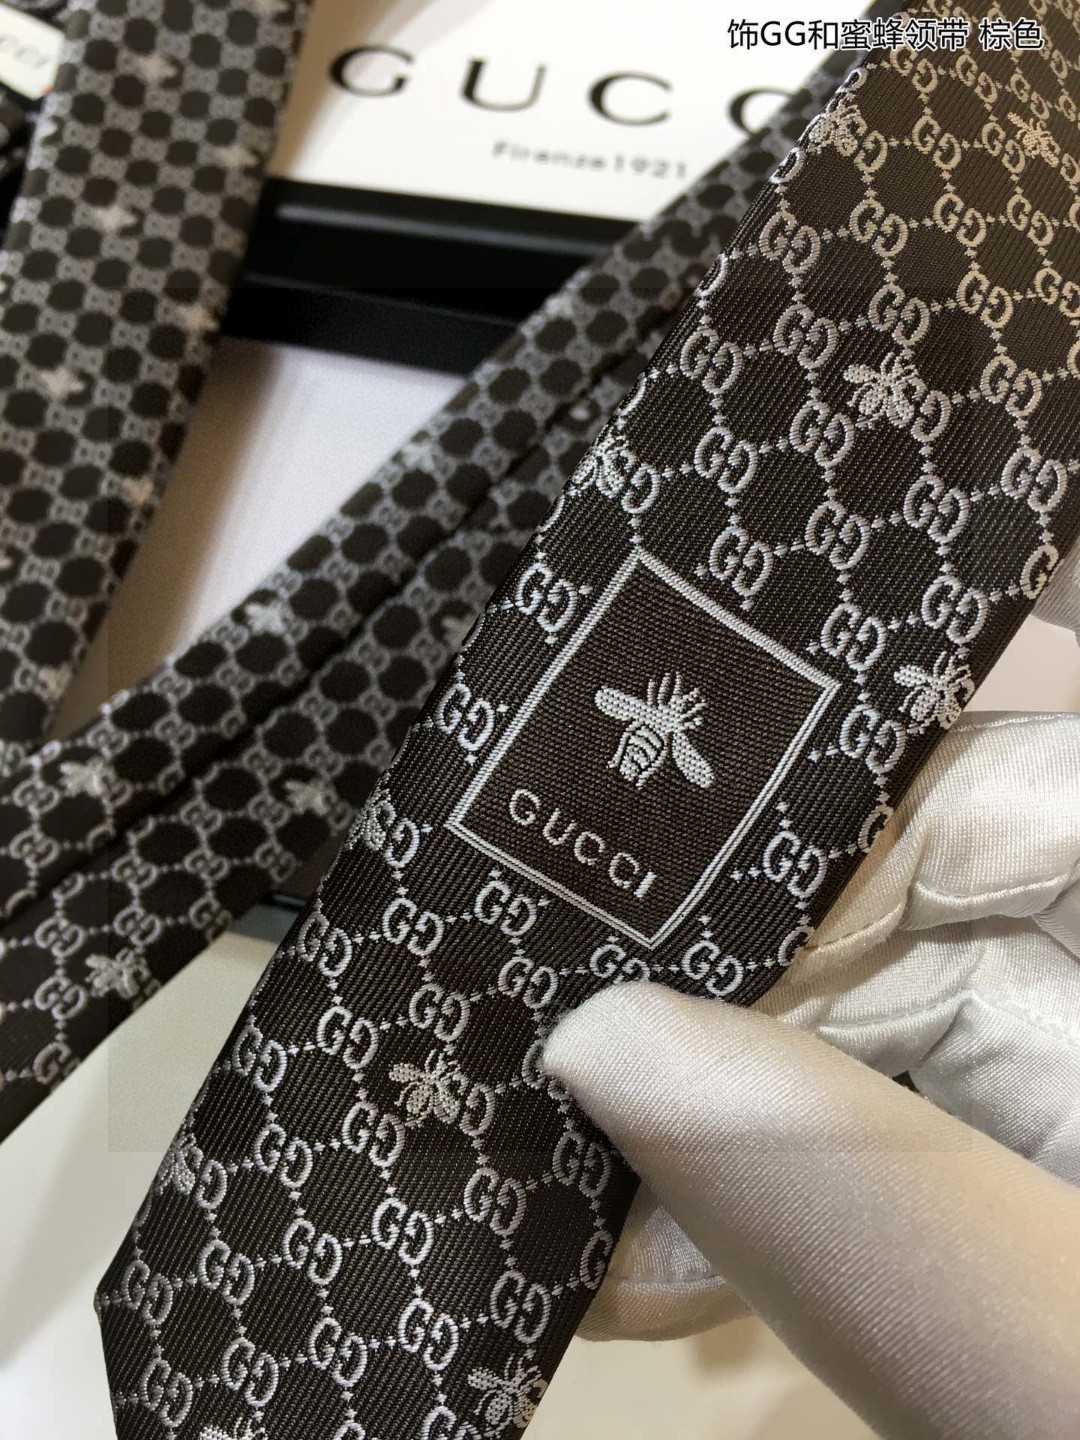 特价G家专柜新款男士领带饰GG和蜜蜂领带稀有采用经典小GLOGO提花展现精湛手工与时尚优雅的理想选择这款